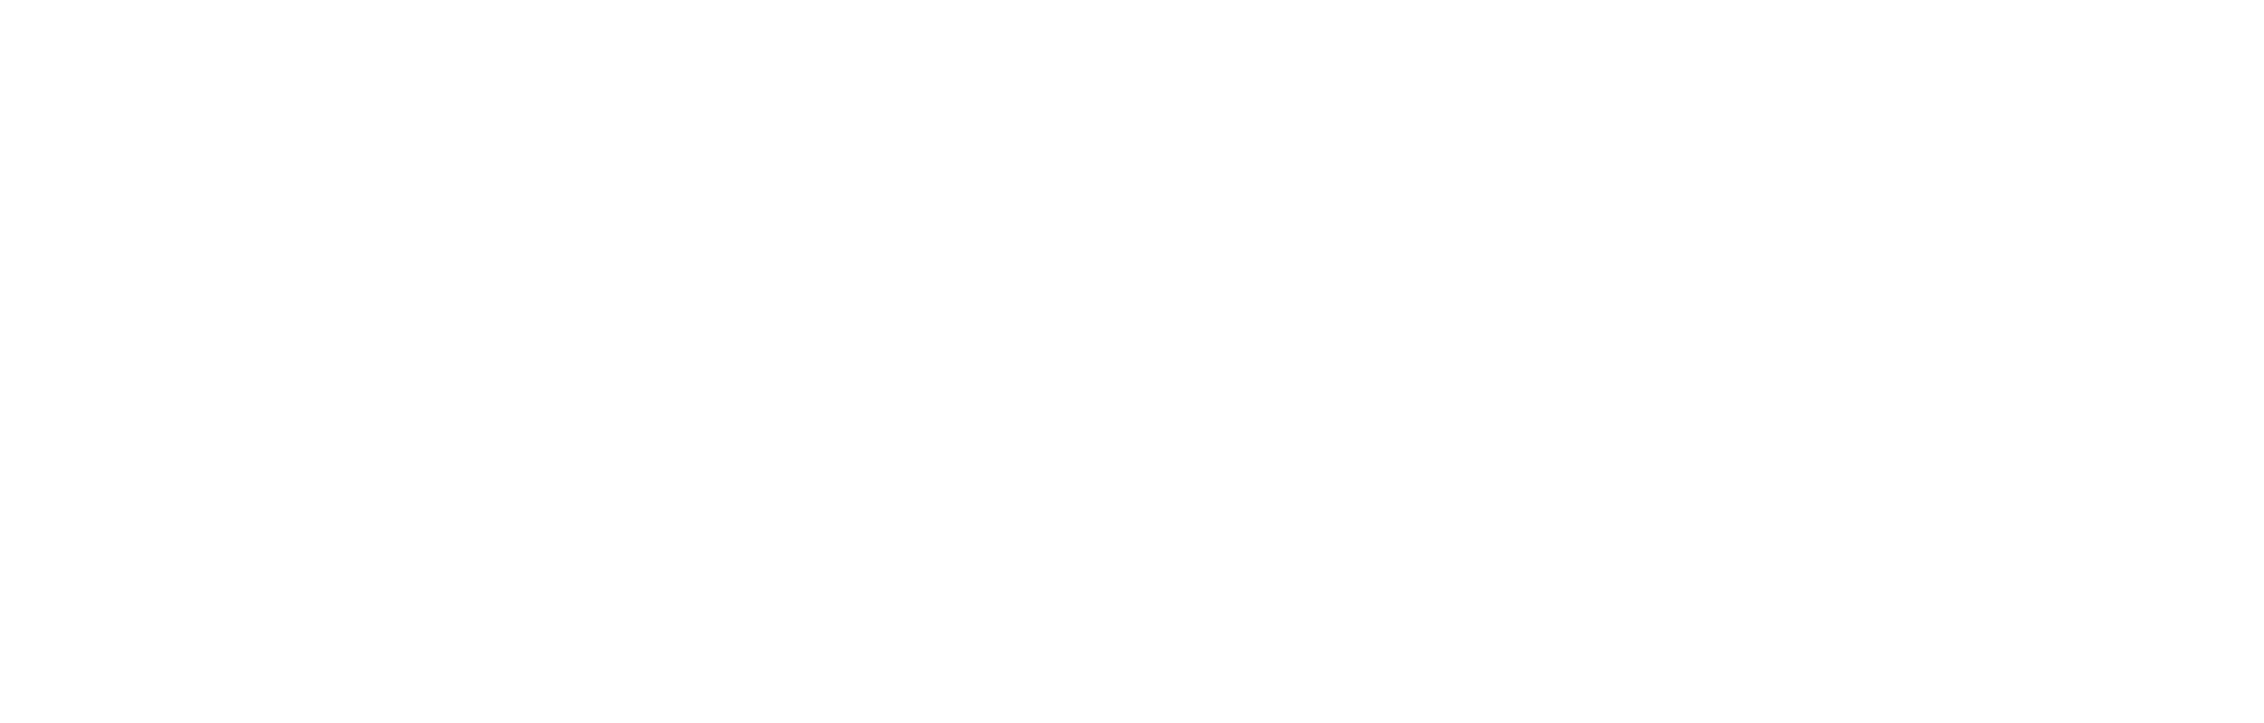 PKH脚步标志